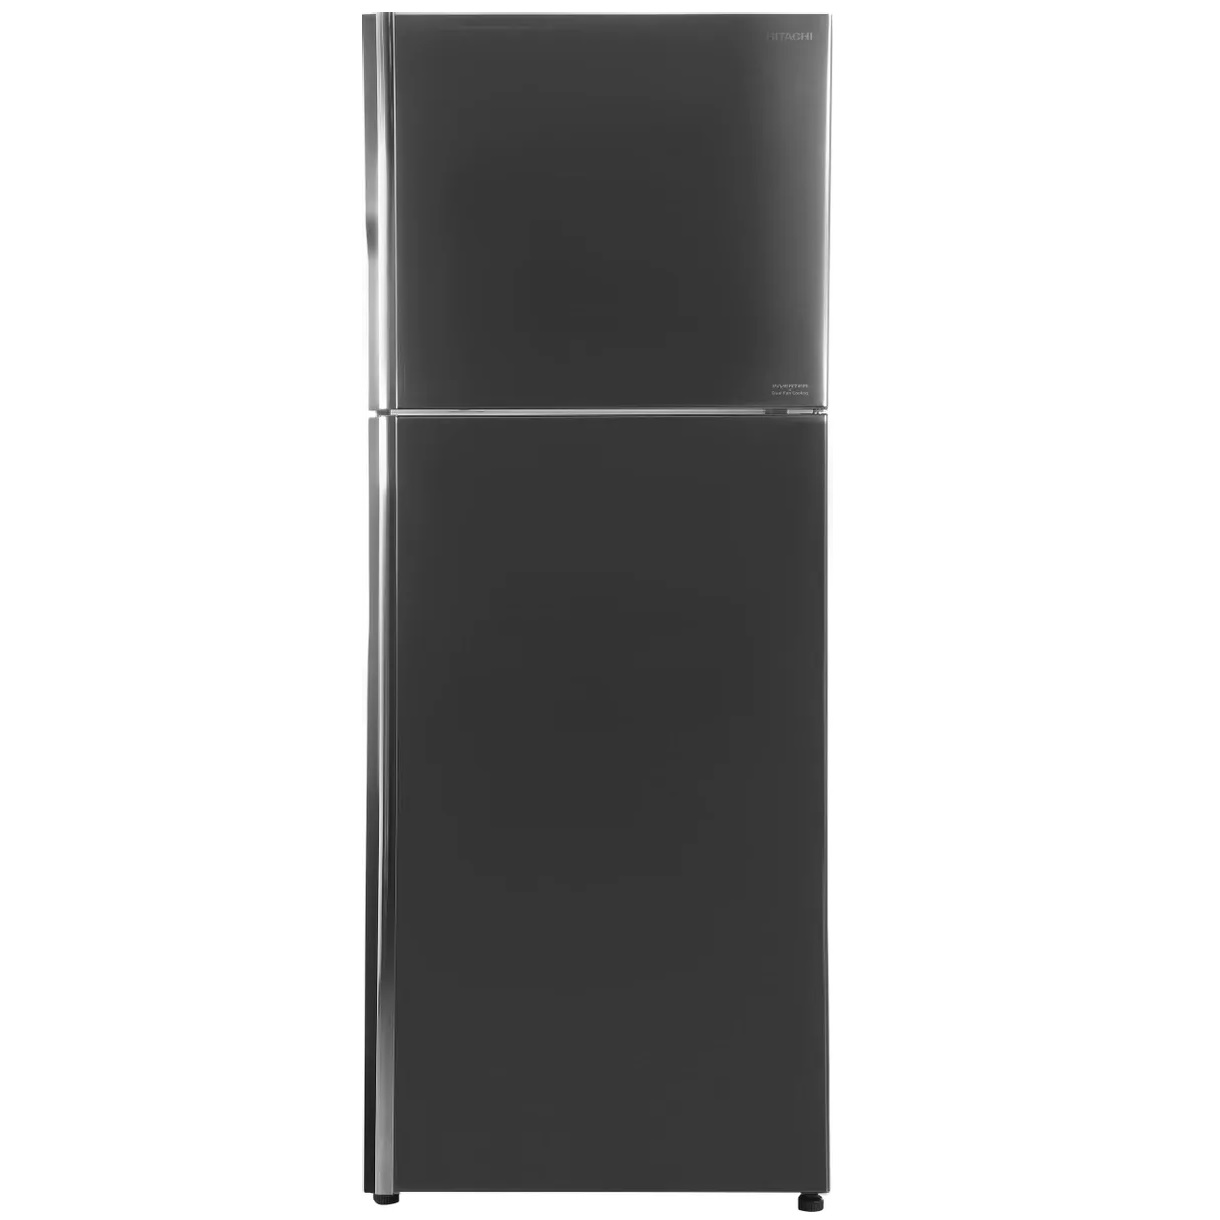 Холодильник Hitachi R-VX470PUC9 BSL серебристый холодильник hitachi r vx470puc9 bsl серебристый